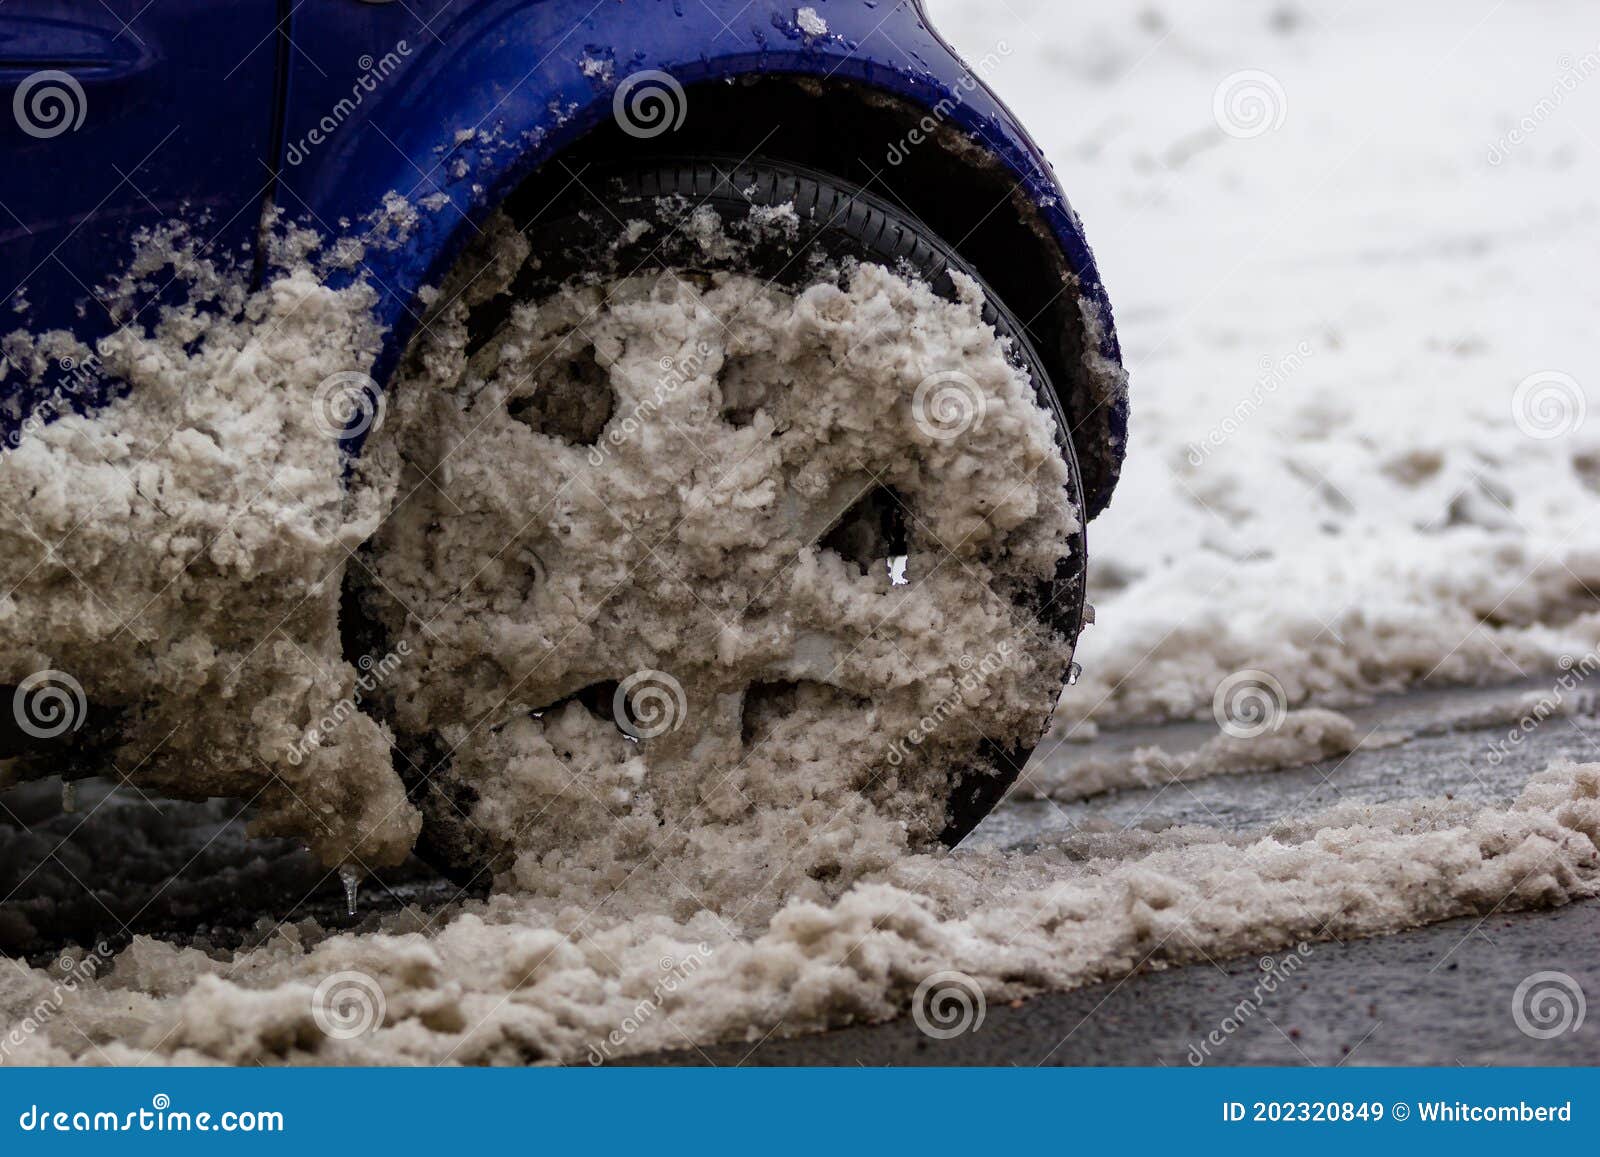 Autofahren bei Schnee und Eis